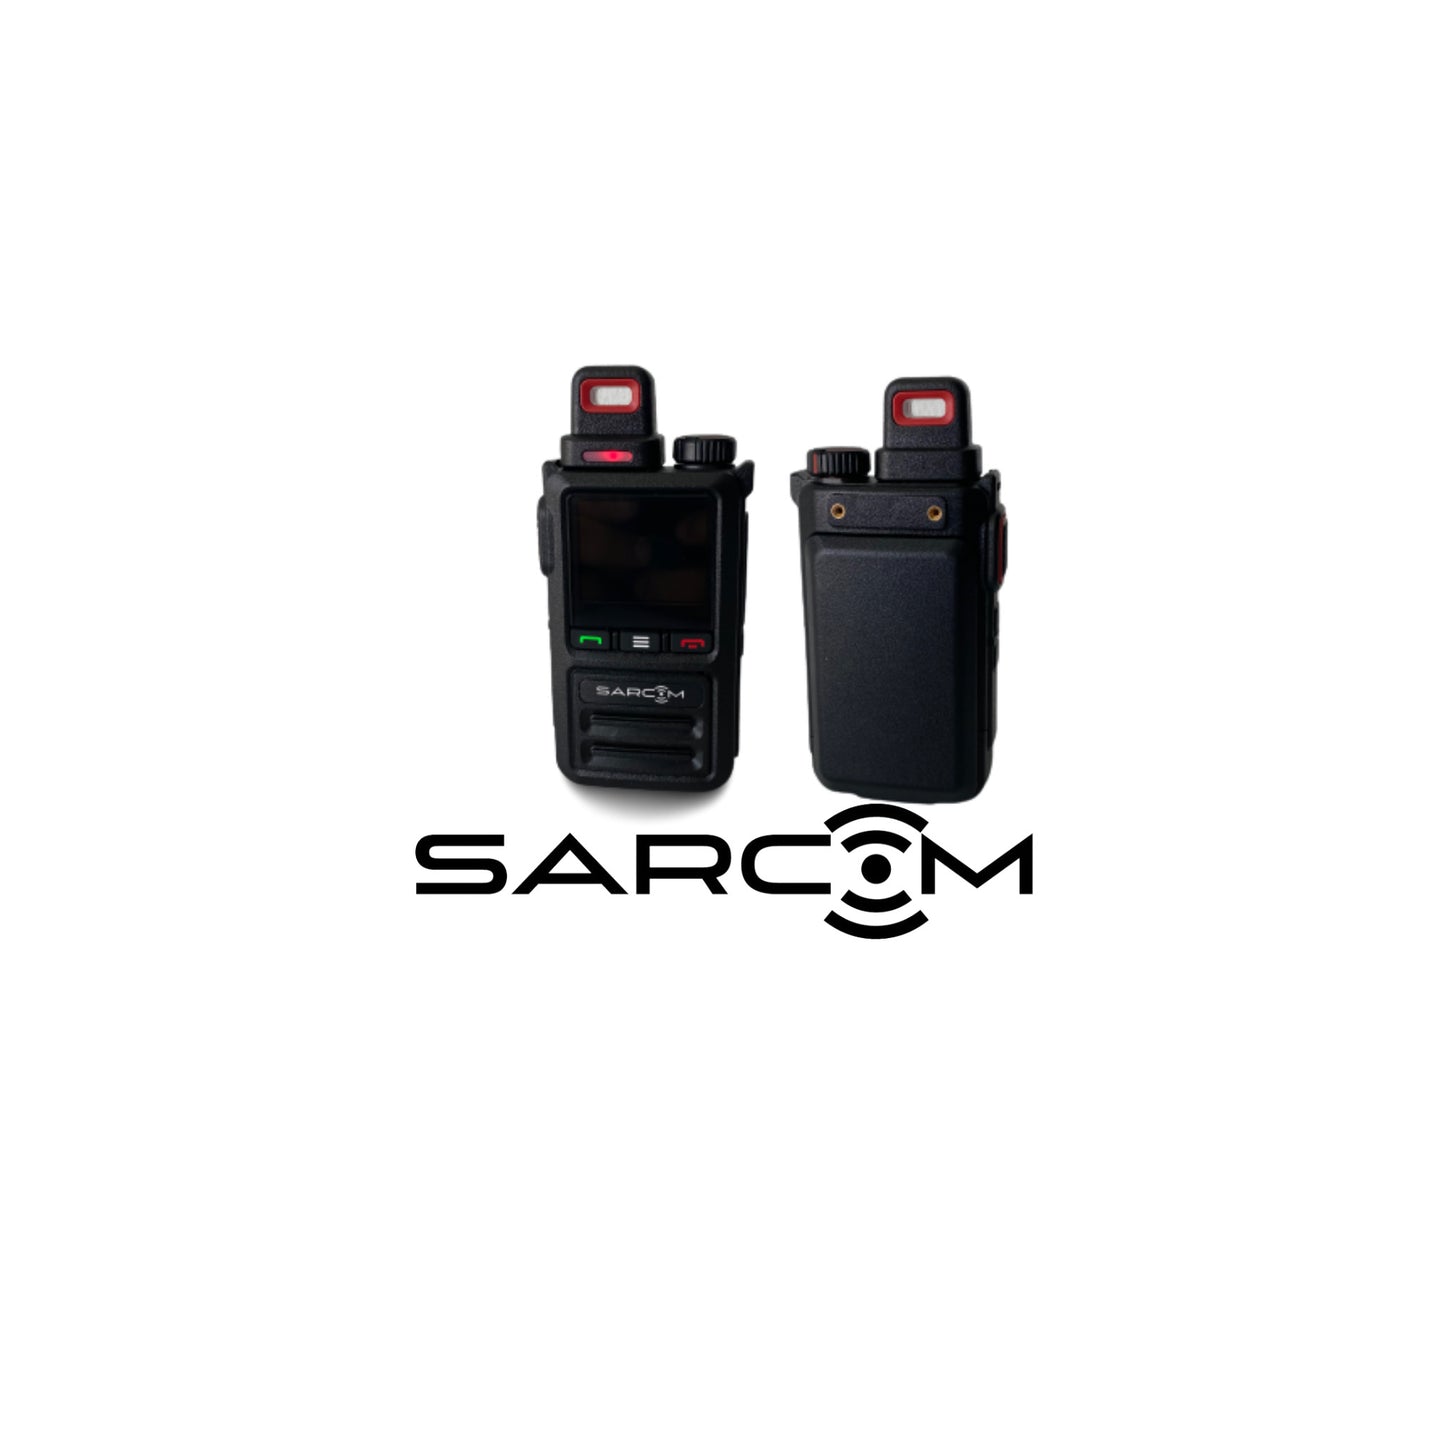 Sarcom Model 318 4G LTE Radio